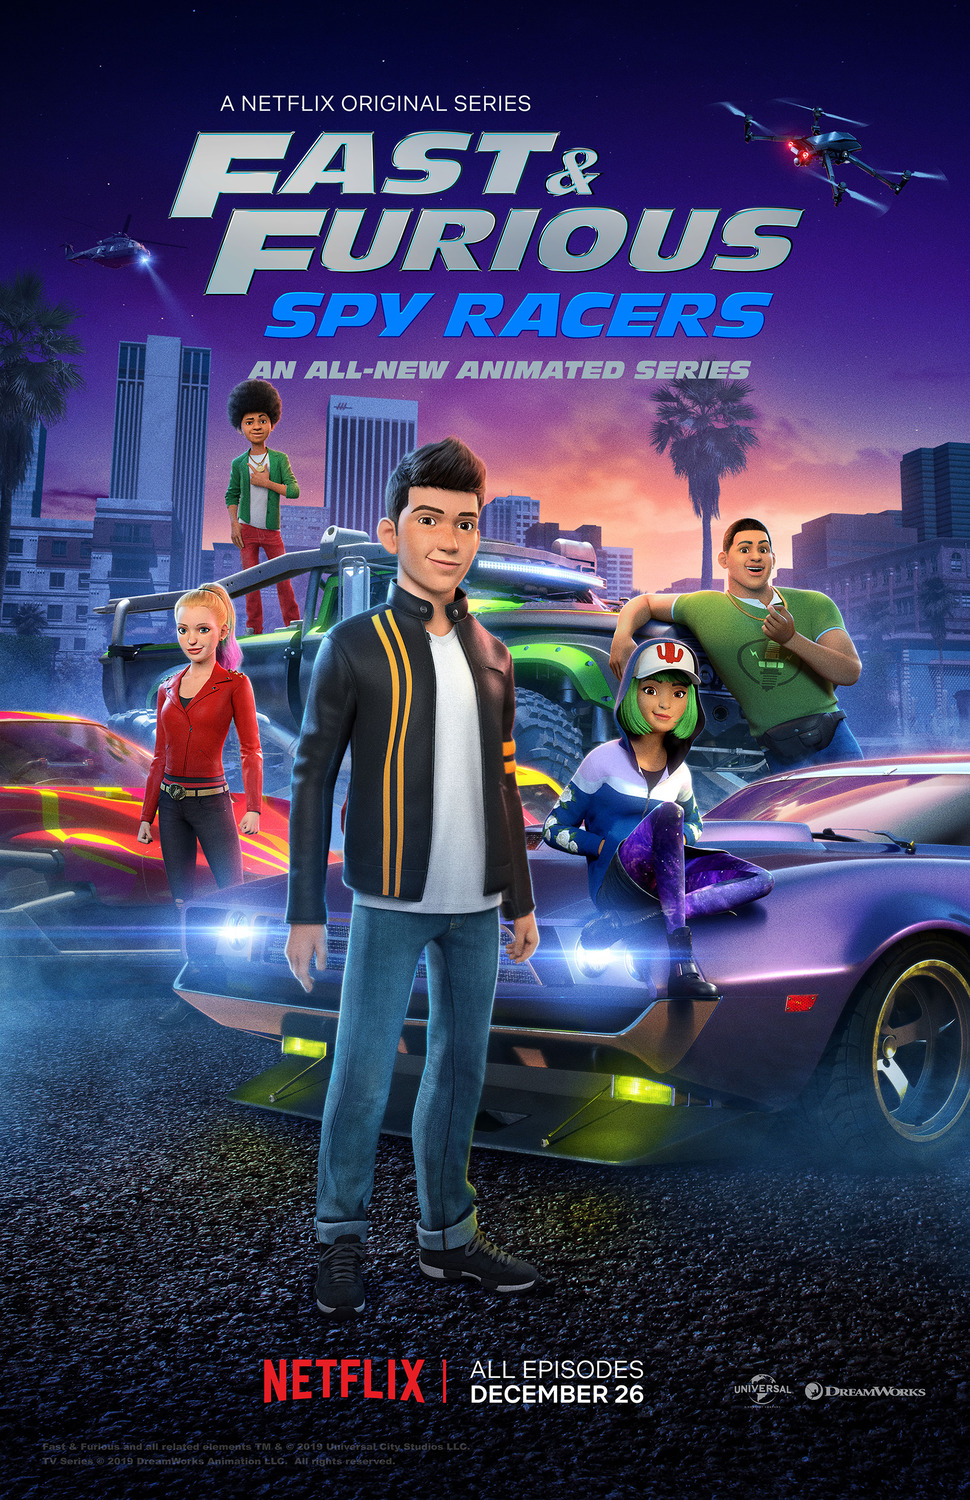 ดูหนังออนไลน์ฟรี Fast & Furious Spy Racers Season 6 EP.4 เร็วแรงทะลุนรก ซิ่งสยบโลก ซีซั่น 6 ตอนที่ 4